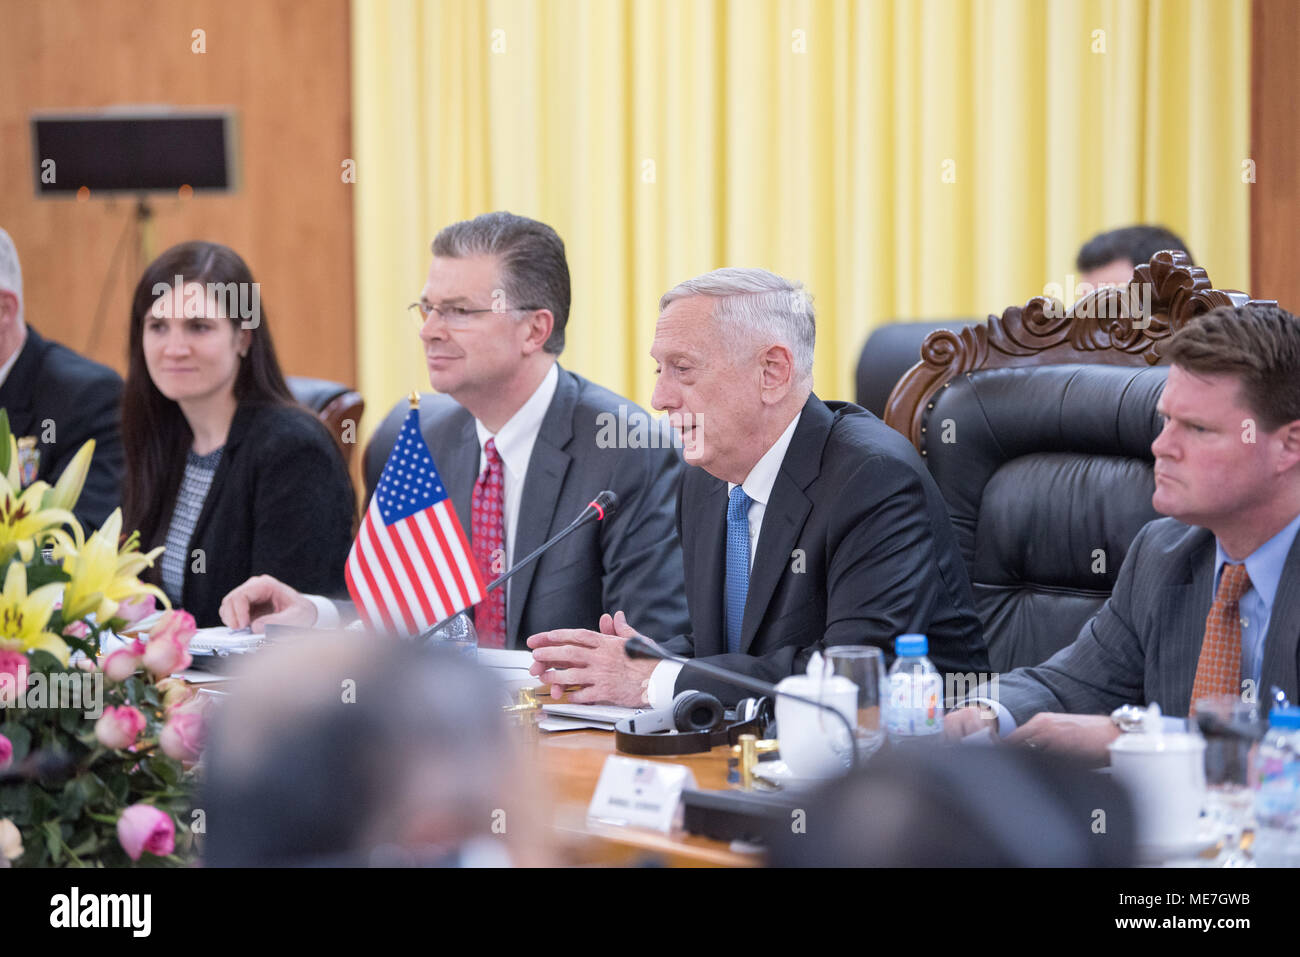 Le Secrétaire à la défense américain James Mattis (deuxième à droite) rencontre le ministre de la Défense nationale vietnamienne Ngo Xuan Lich 24 janvier 2018 à Hanoi, Vietnam. (Photo par Amber I. Smith par Planetpix) Banque D'Images